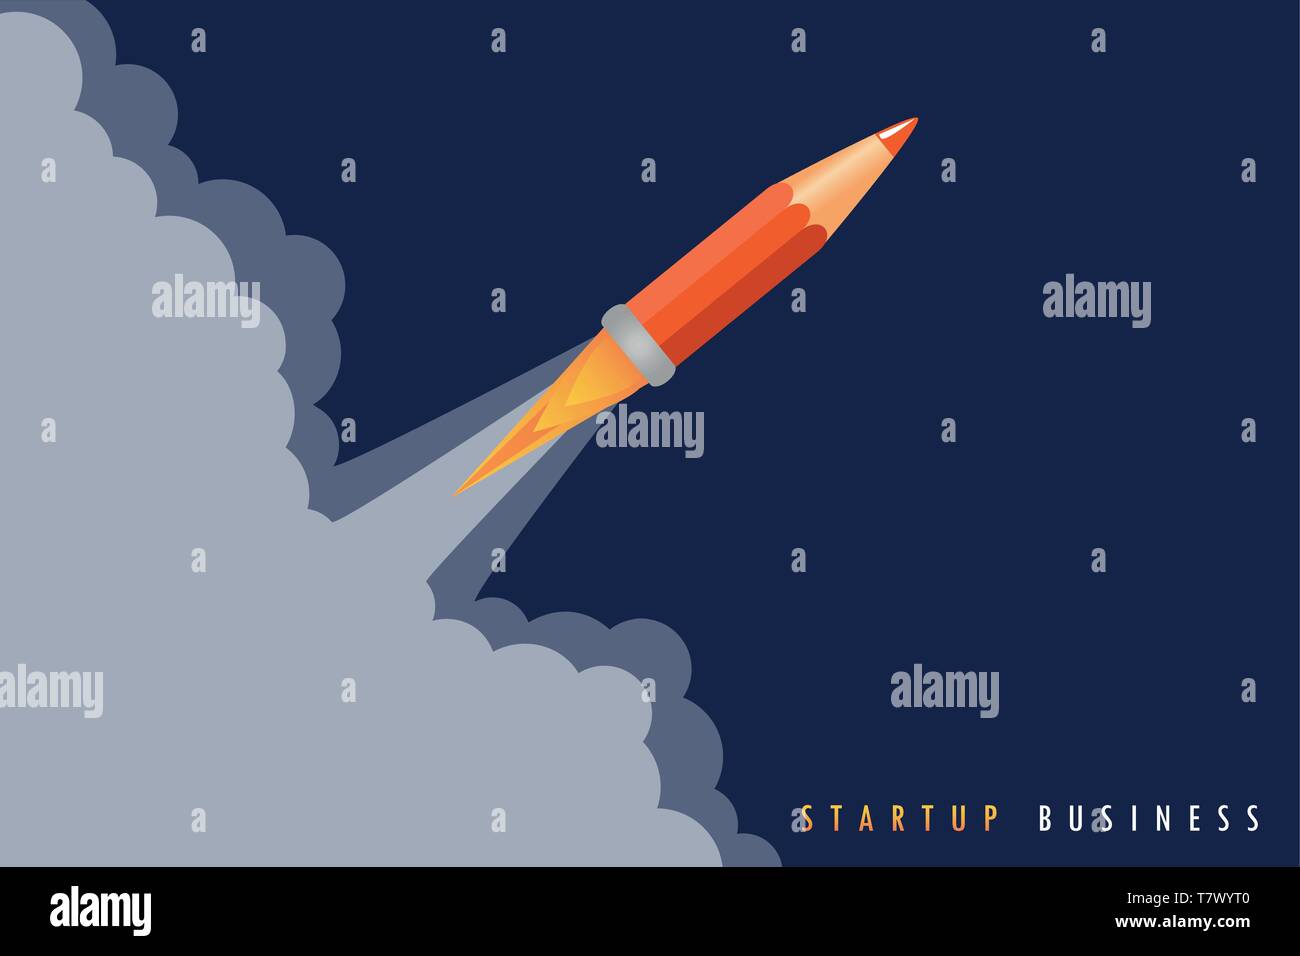 Start Business Konzept mit Bleistift Rocket Launch Vektor-illustration EPS 10. Stock Vektor